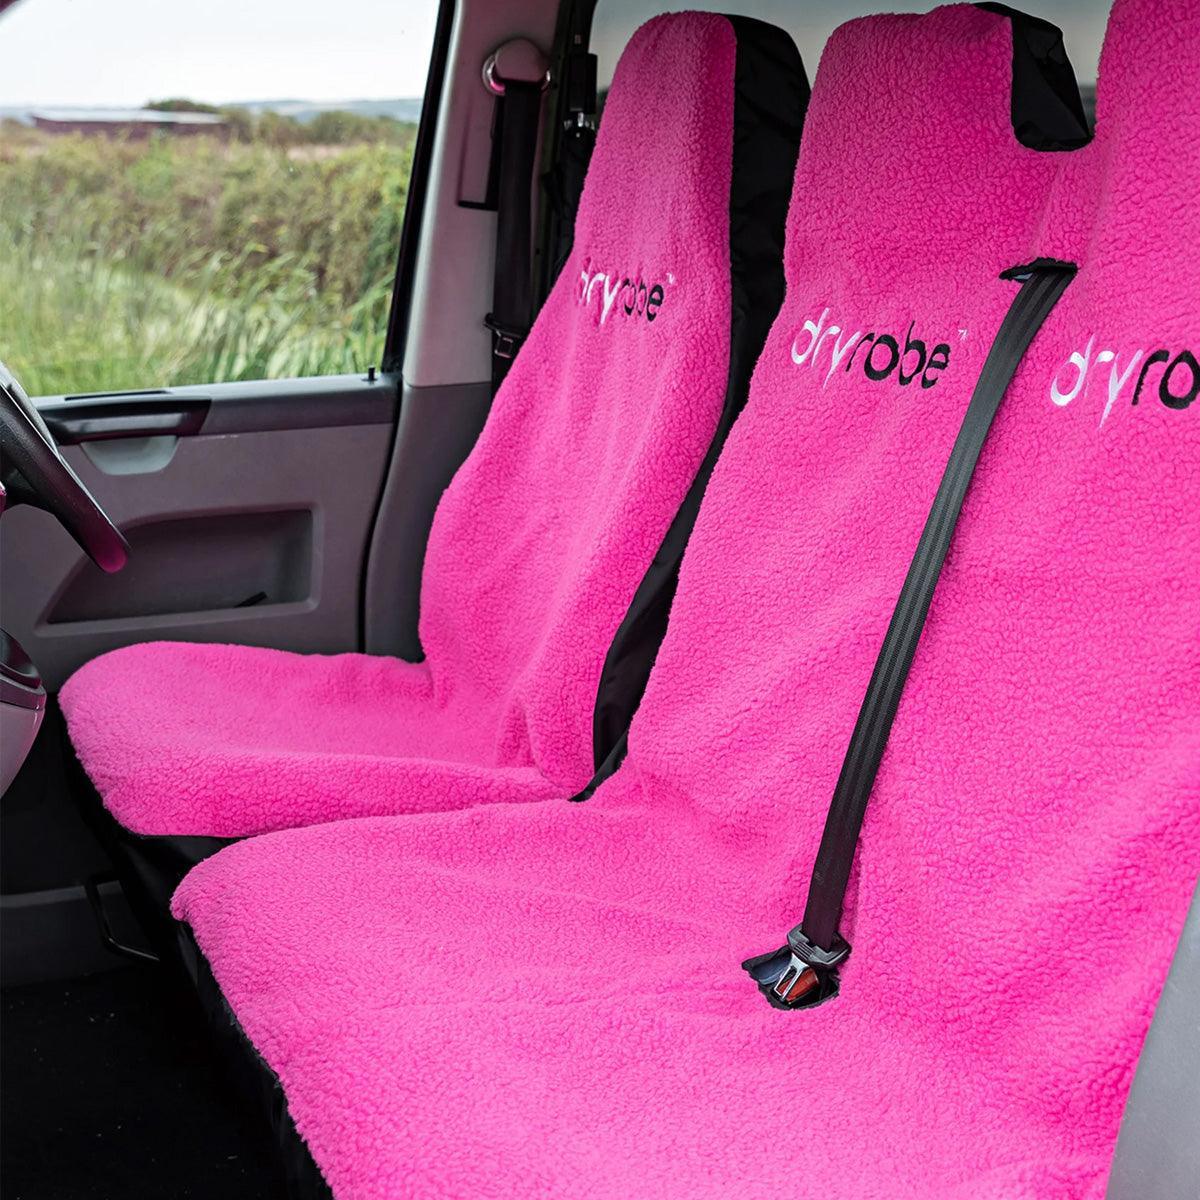 Dryrobe Car Seat Cover - Kitesurf